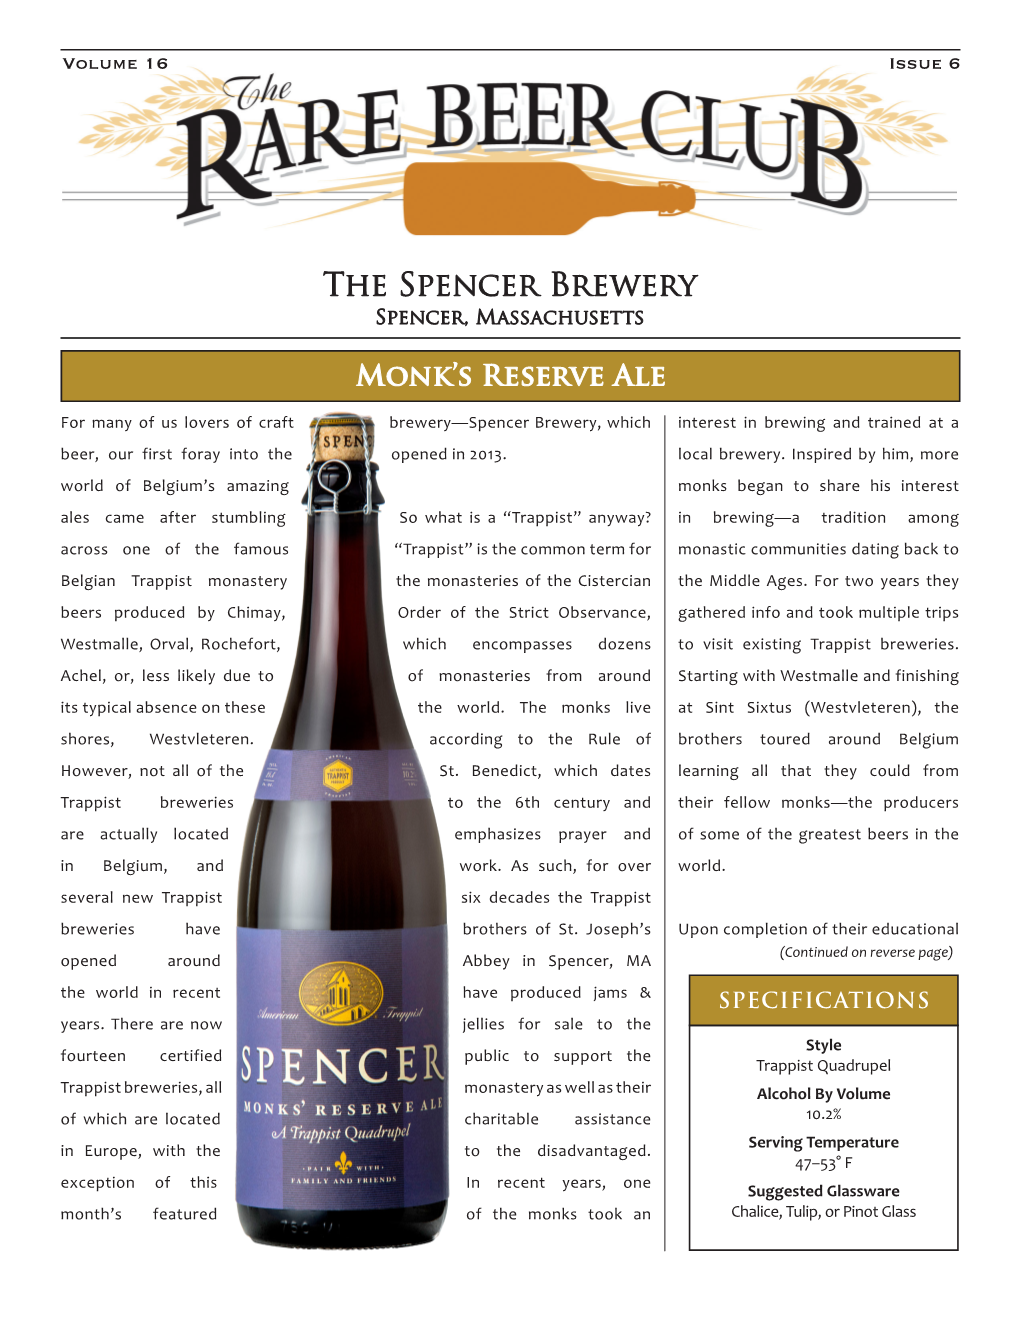 The Spencer Brewery Spencer, Massachusetts